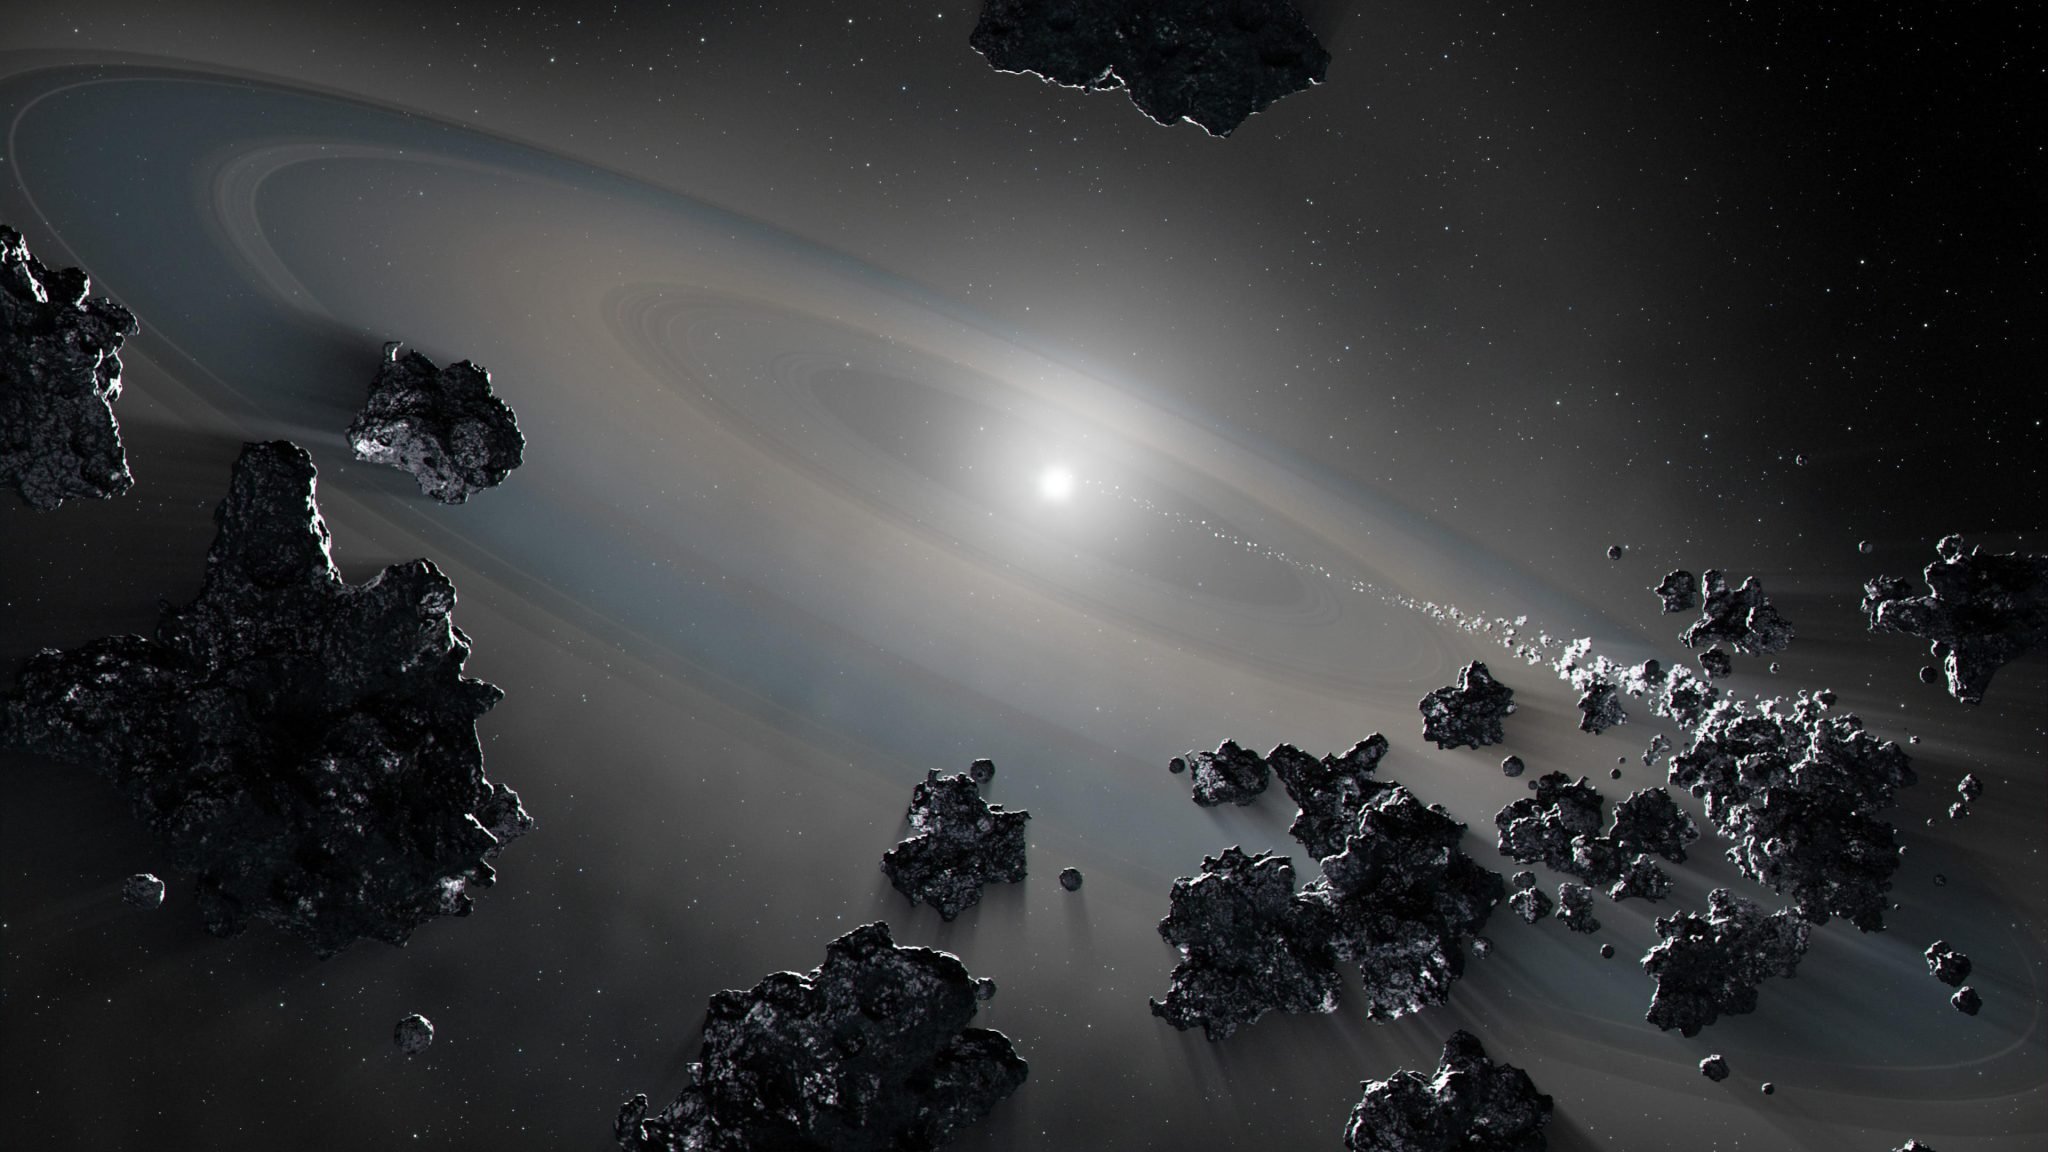 White dwarf star mining debris